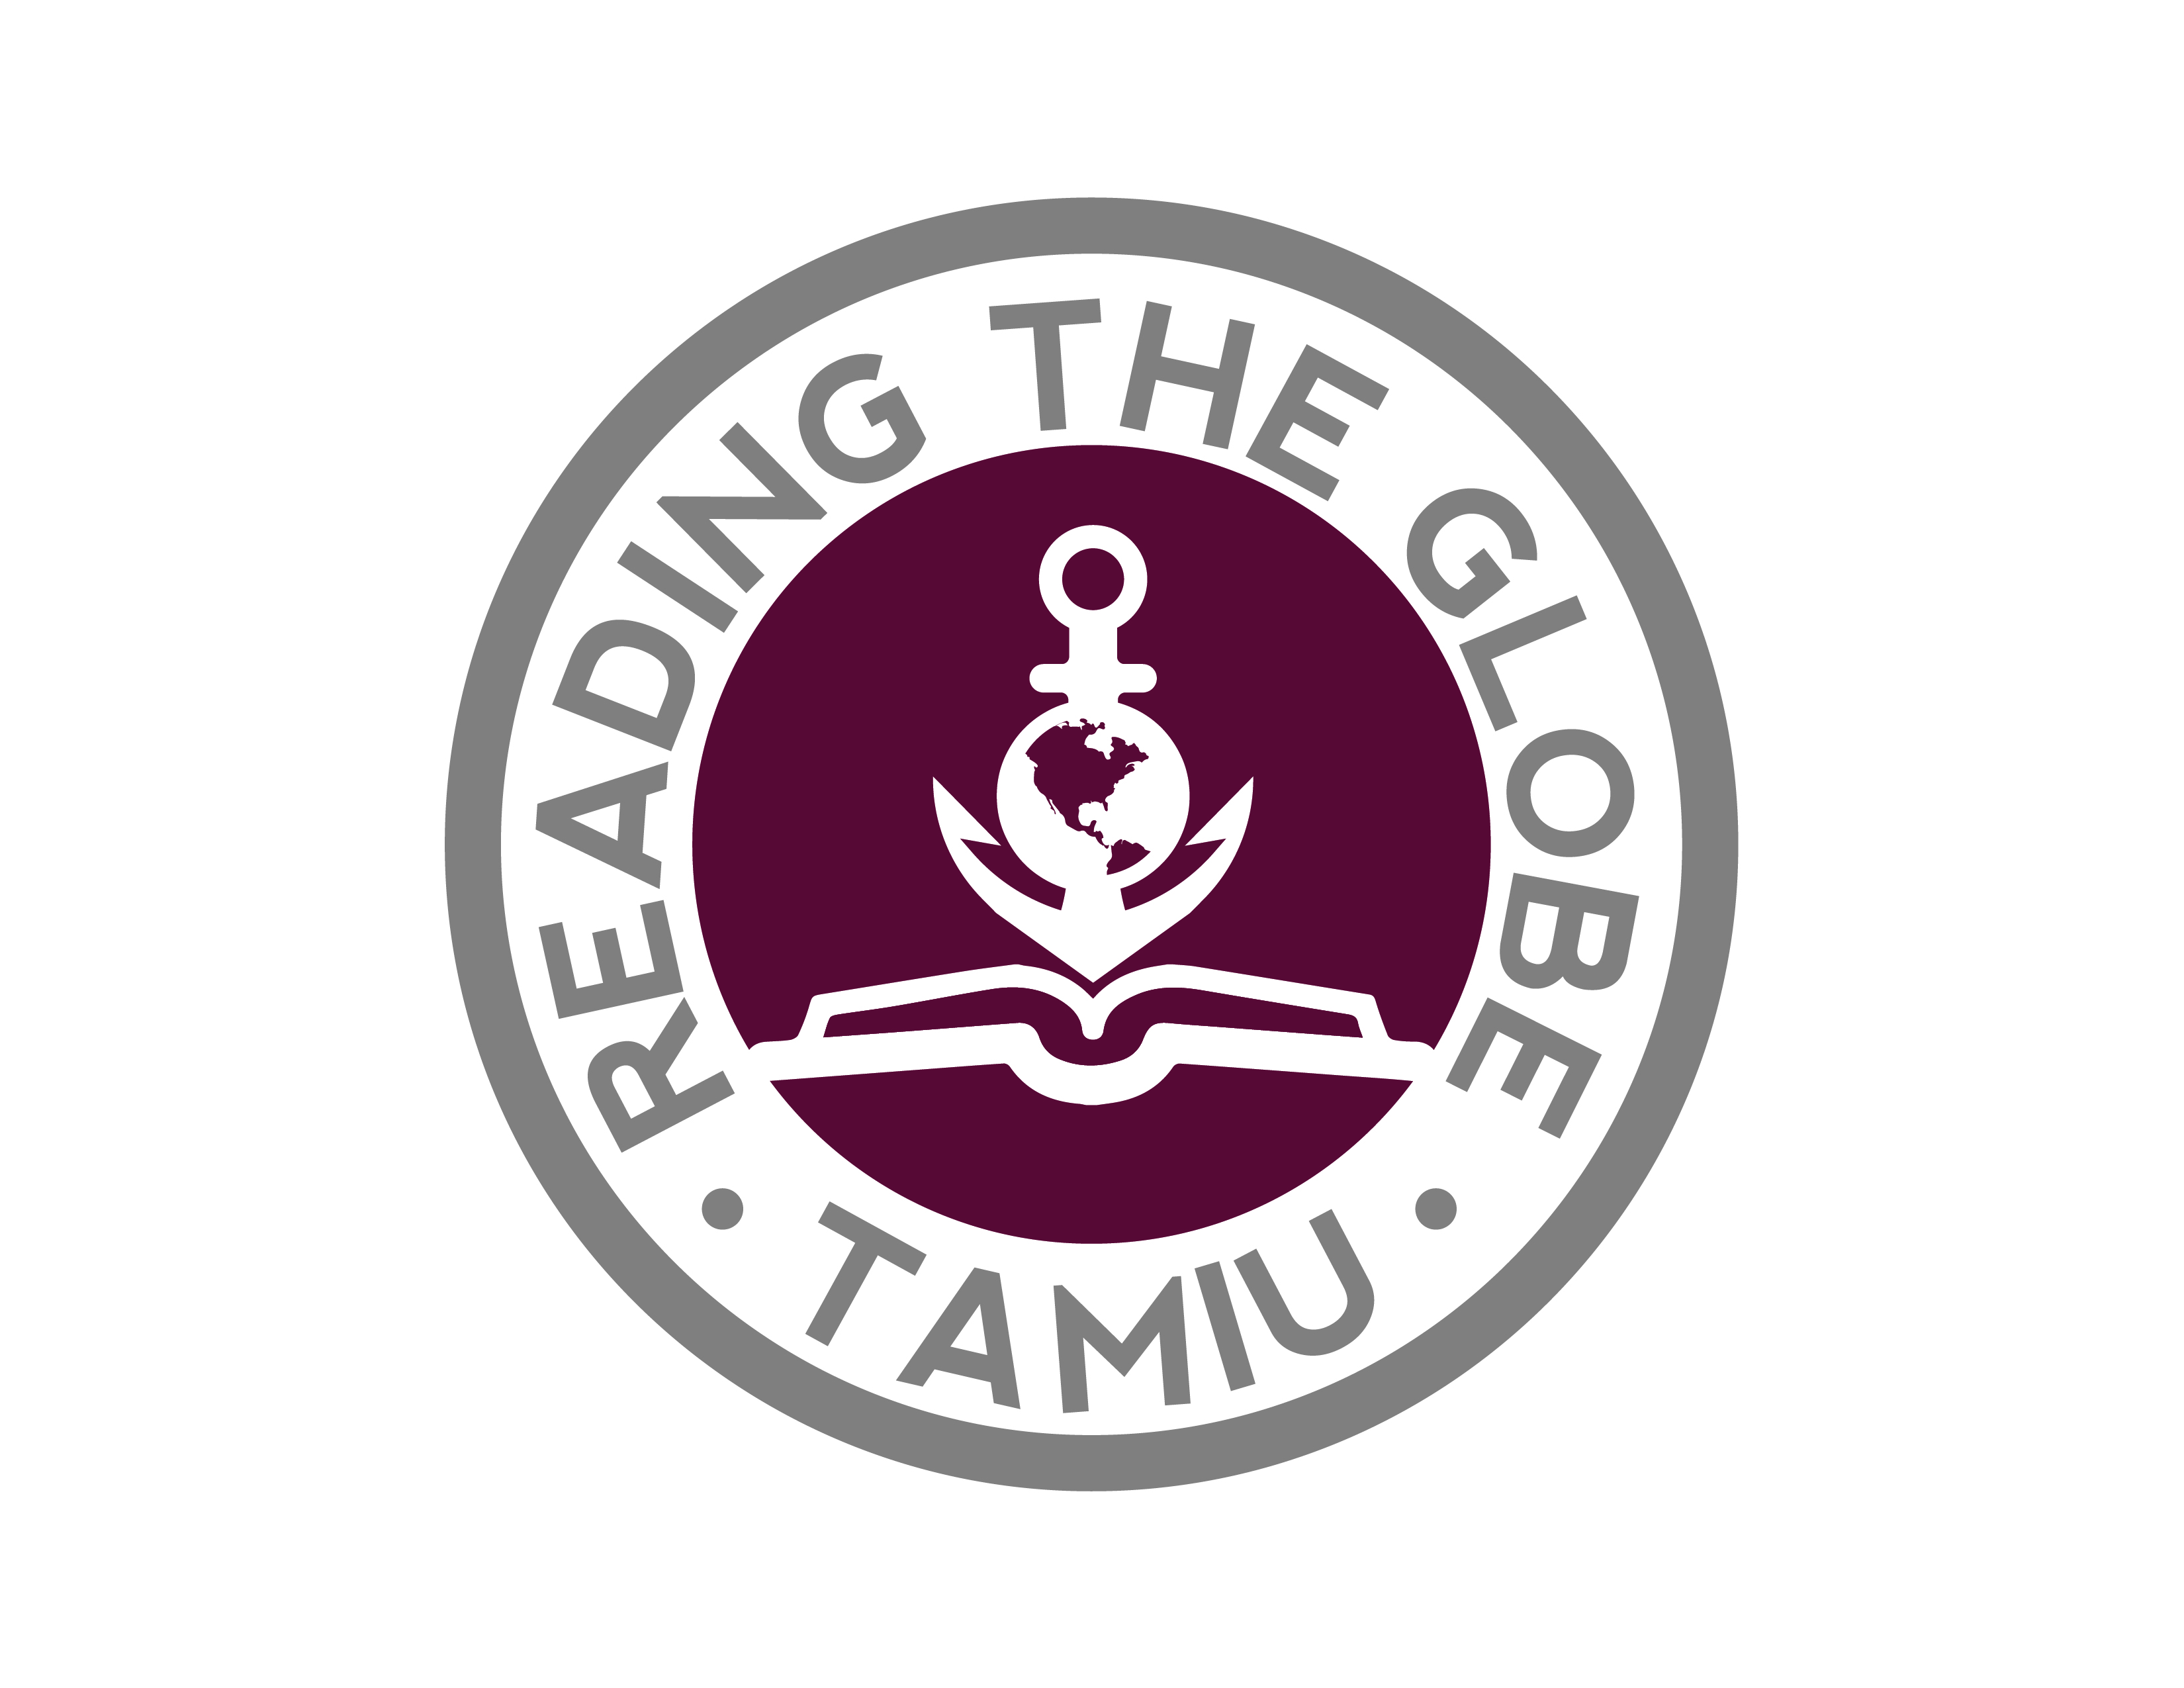 RTG Logo